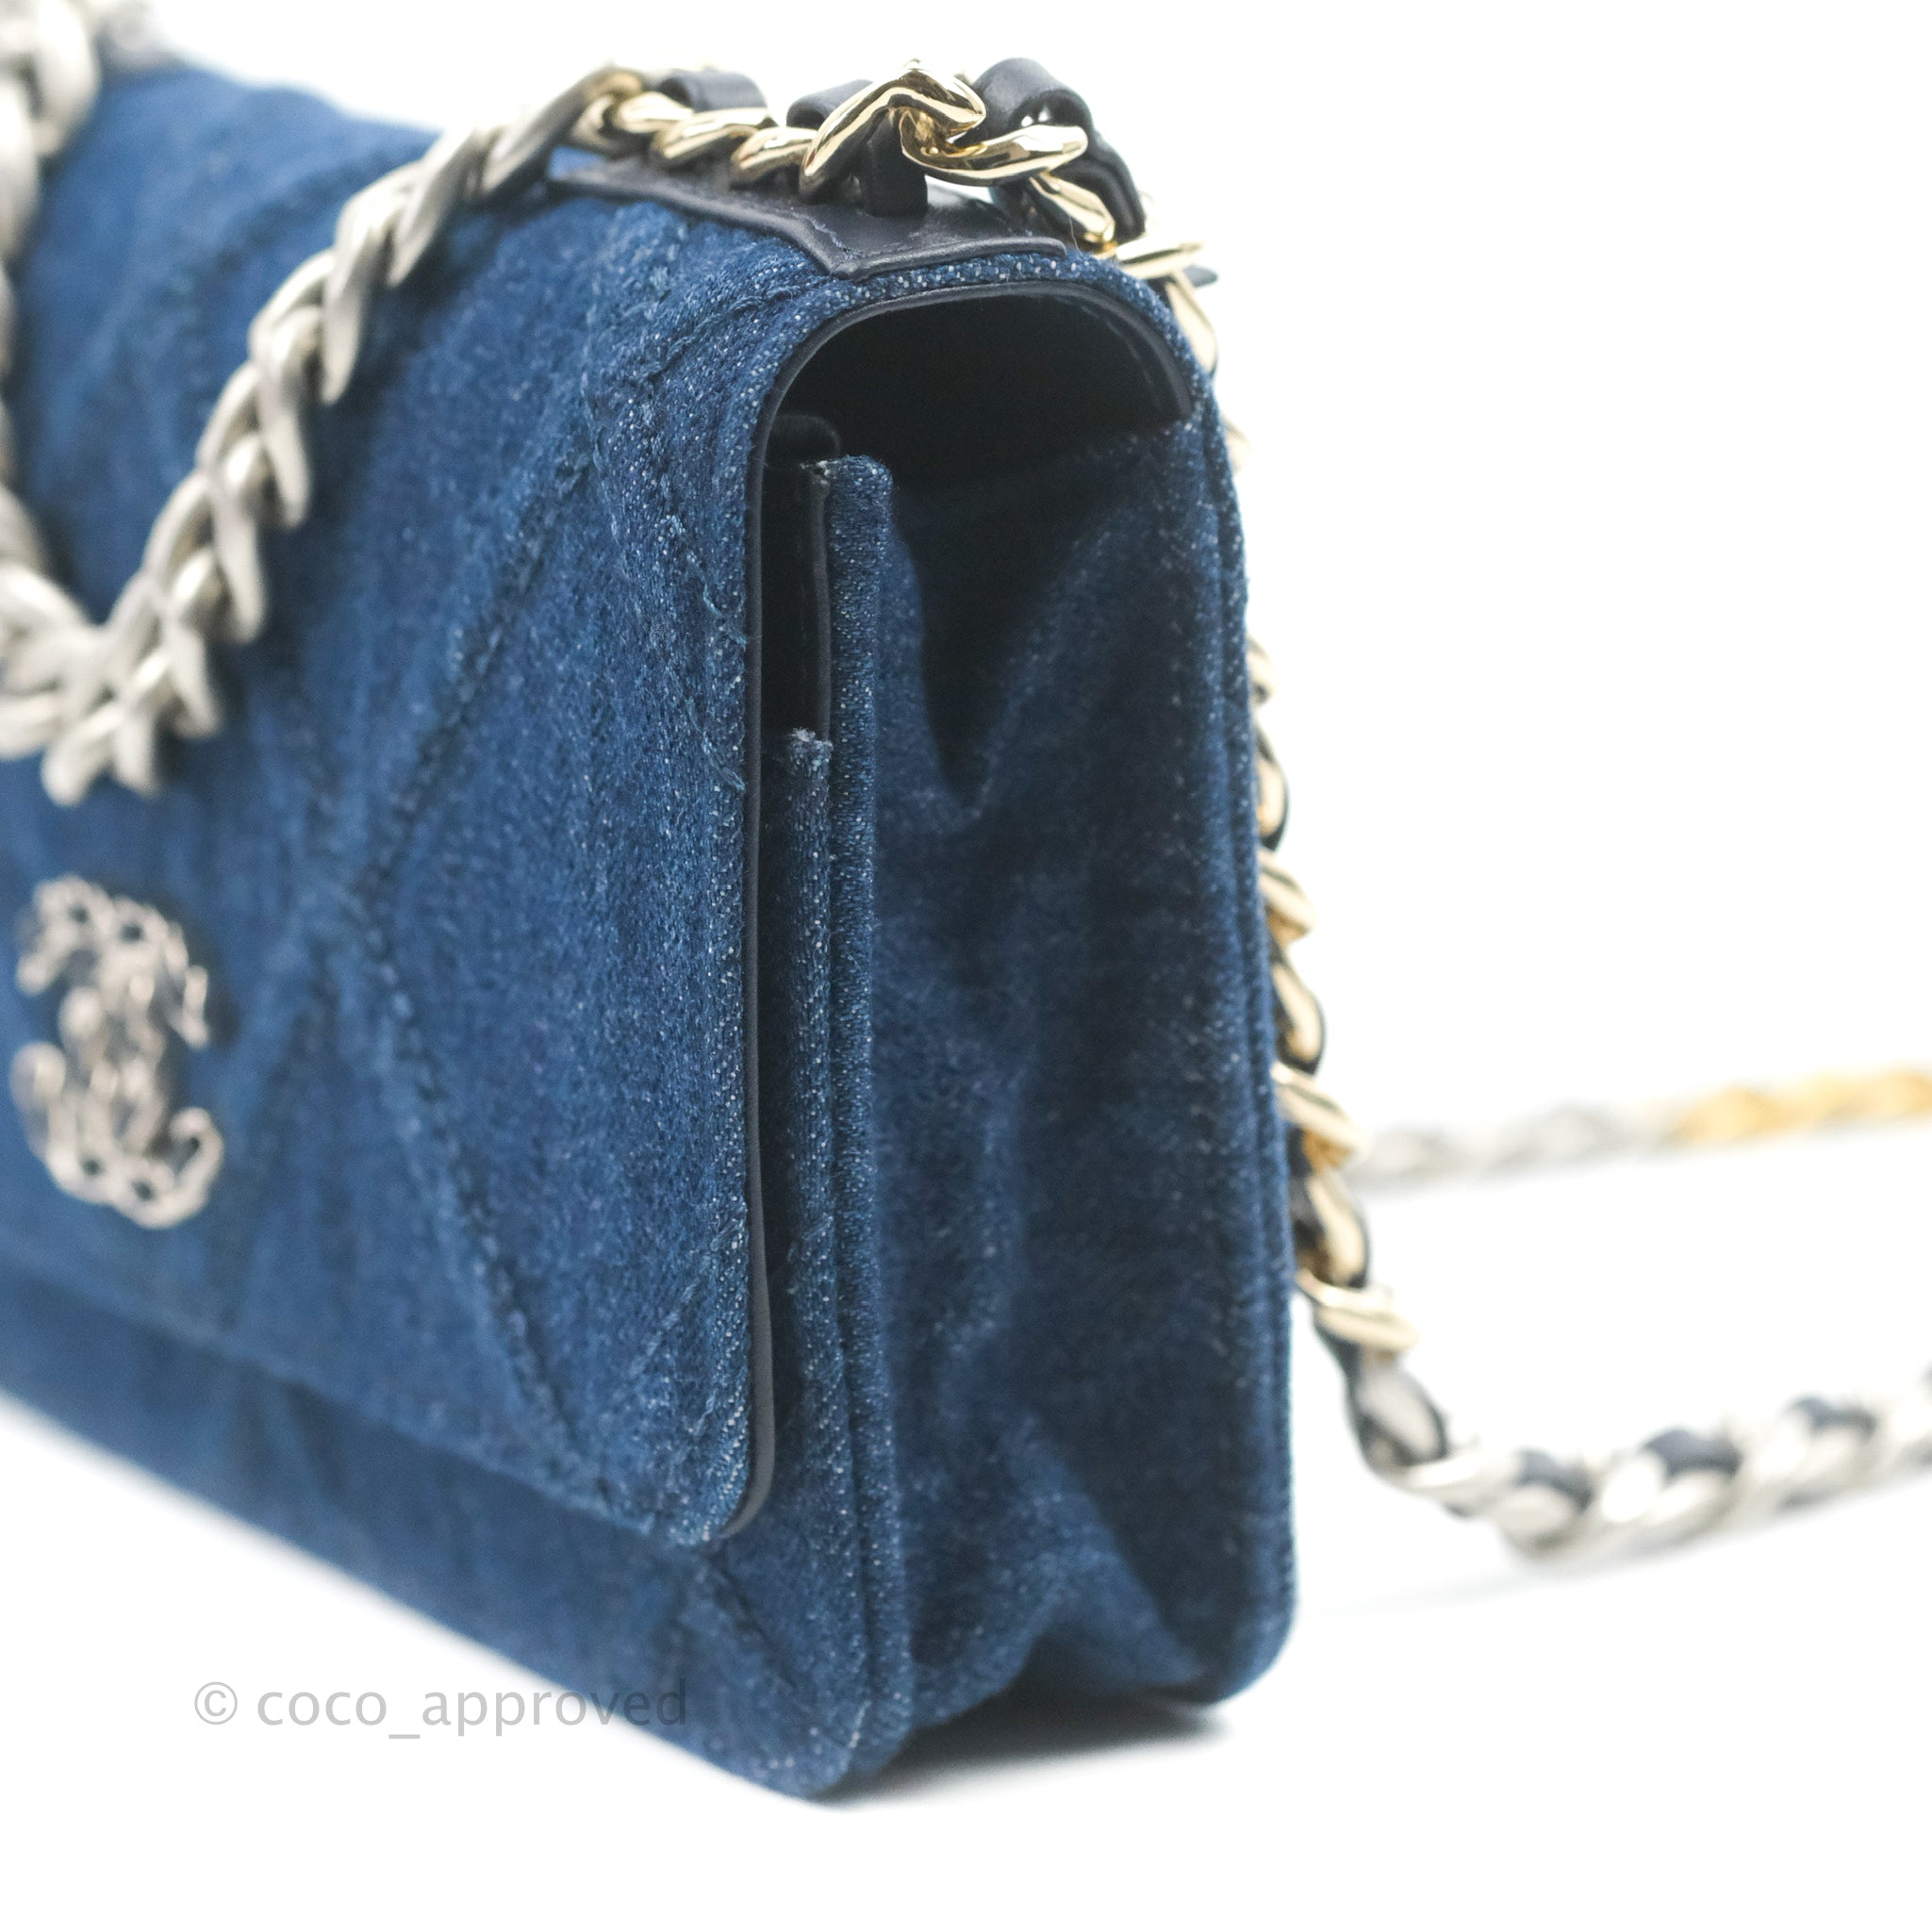 Chanel Mini Rectangular Flap Bag Blue Denim Light Gold Hardware in 2023